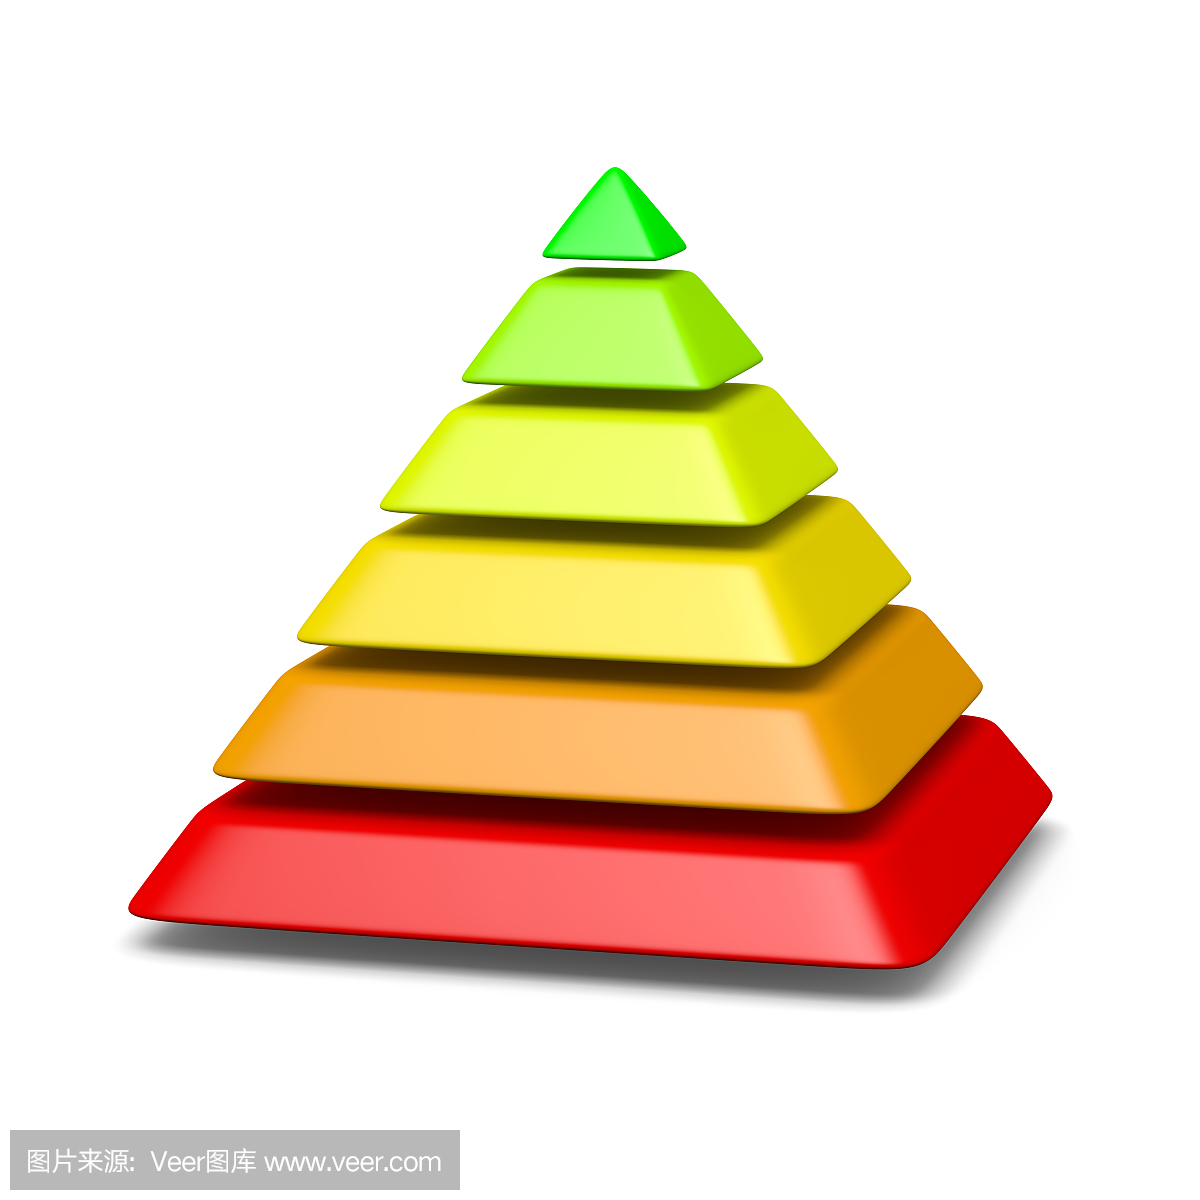 6级金字塔结构环境概念